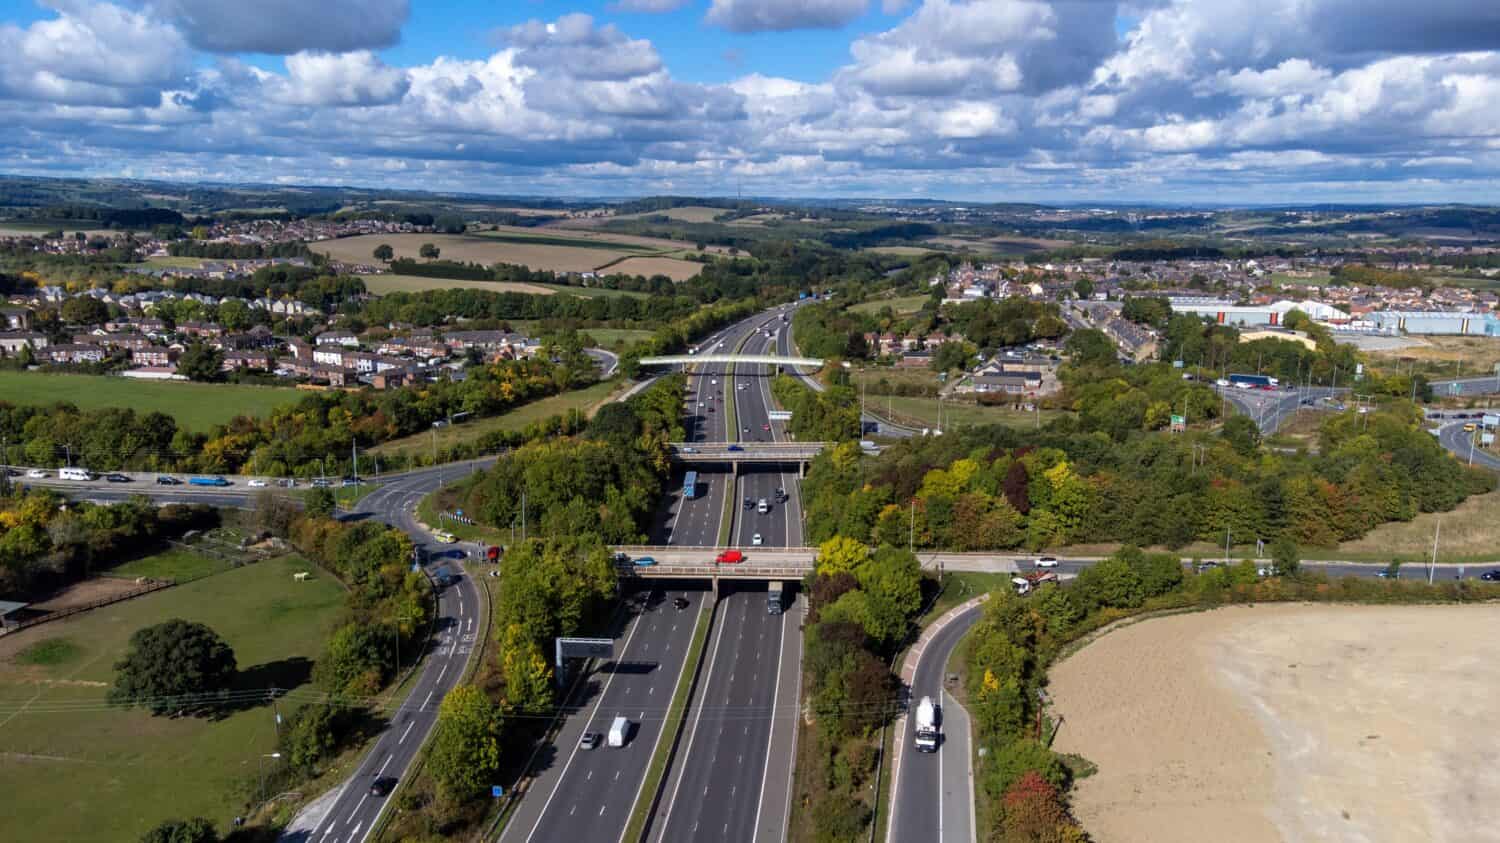 Foto aerea del drone della trafficata autostrada M1 con tre ponti che attraversano l'autostrada nel villaggio di Barnsley a Sheffield UK in estate in una luminosa giornata estiva.